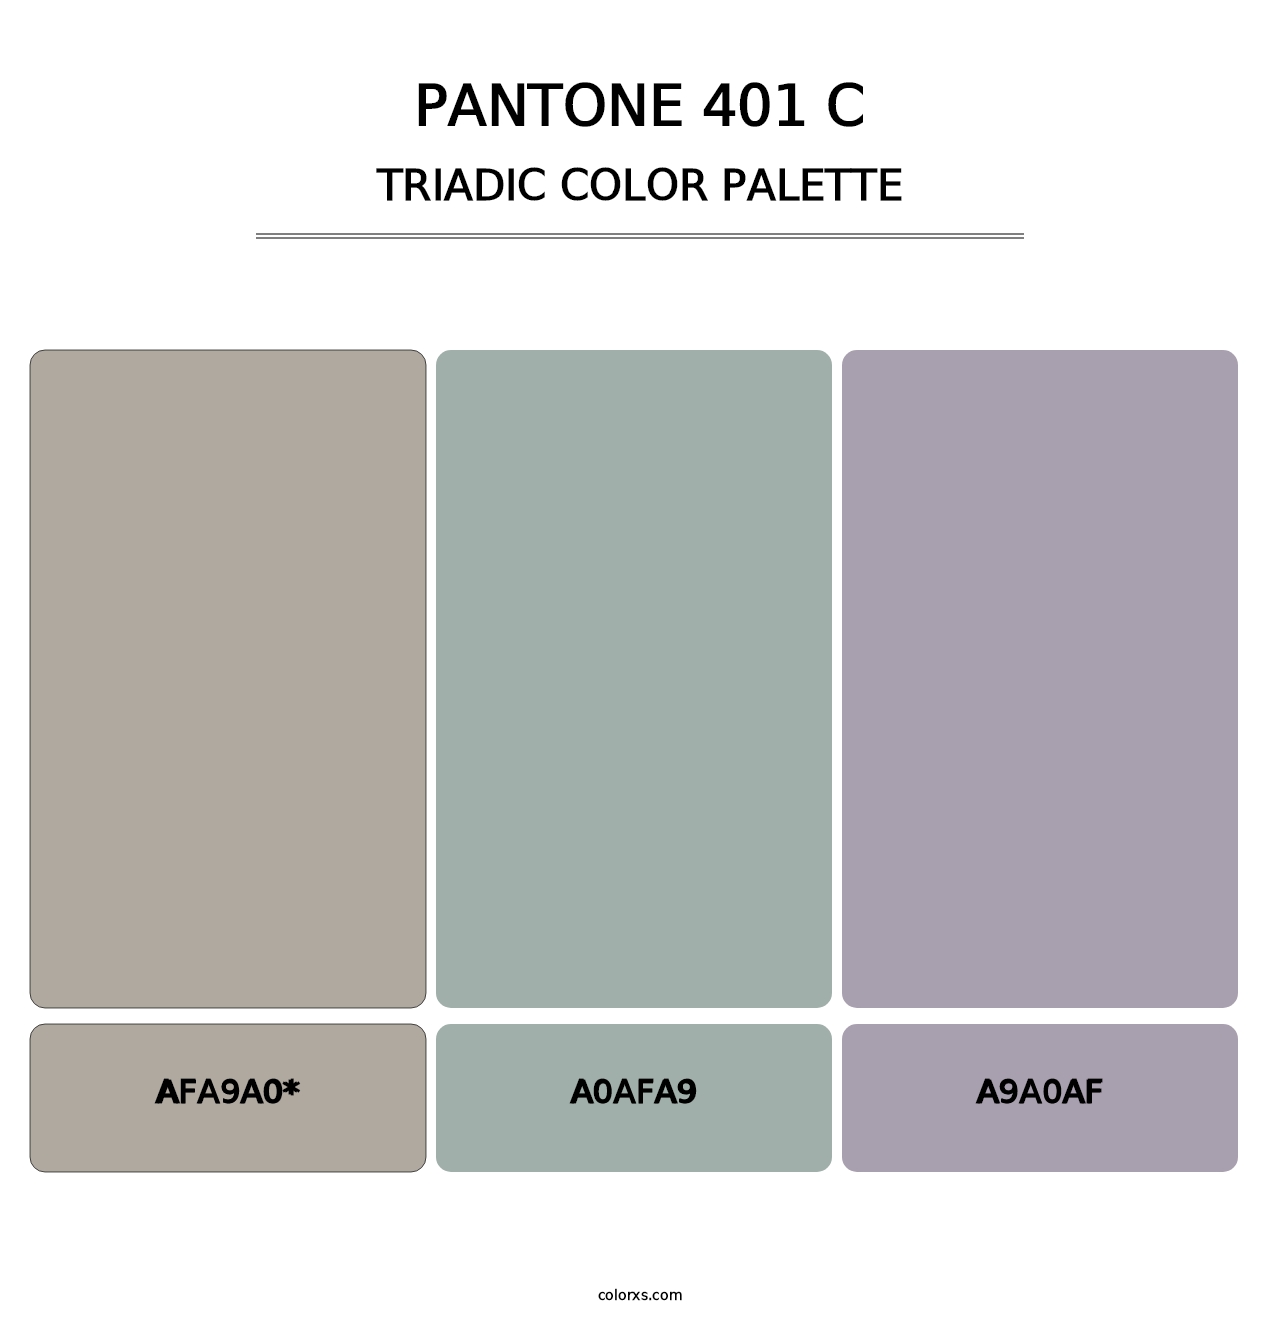 PANTONE 401 C - Triadic Color Palette